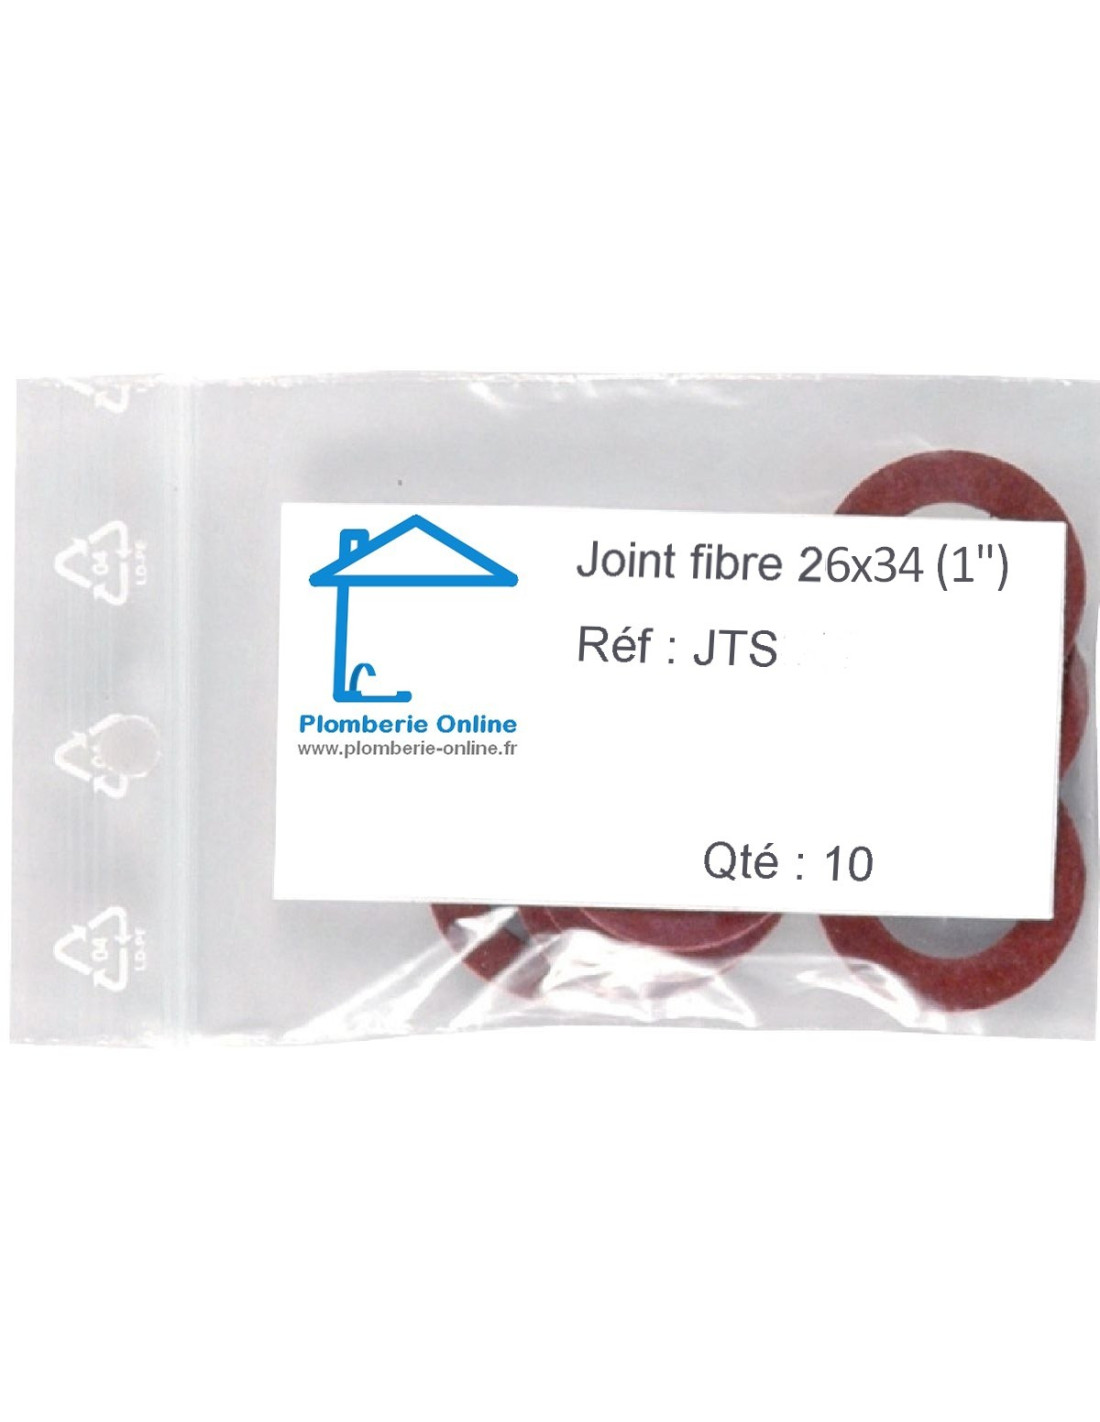 Coffret 86 joints plomberie - Joints fibre,csc et caoutchouc WATTS